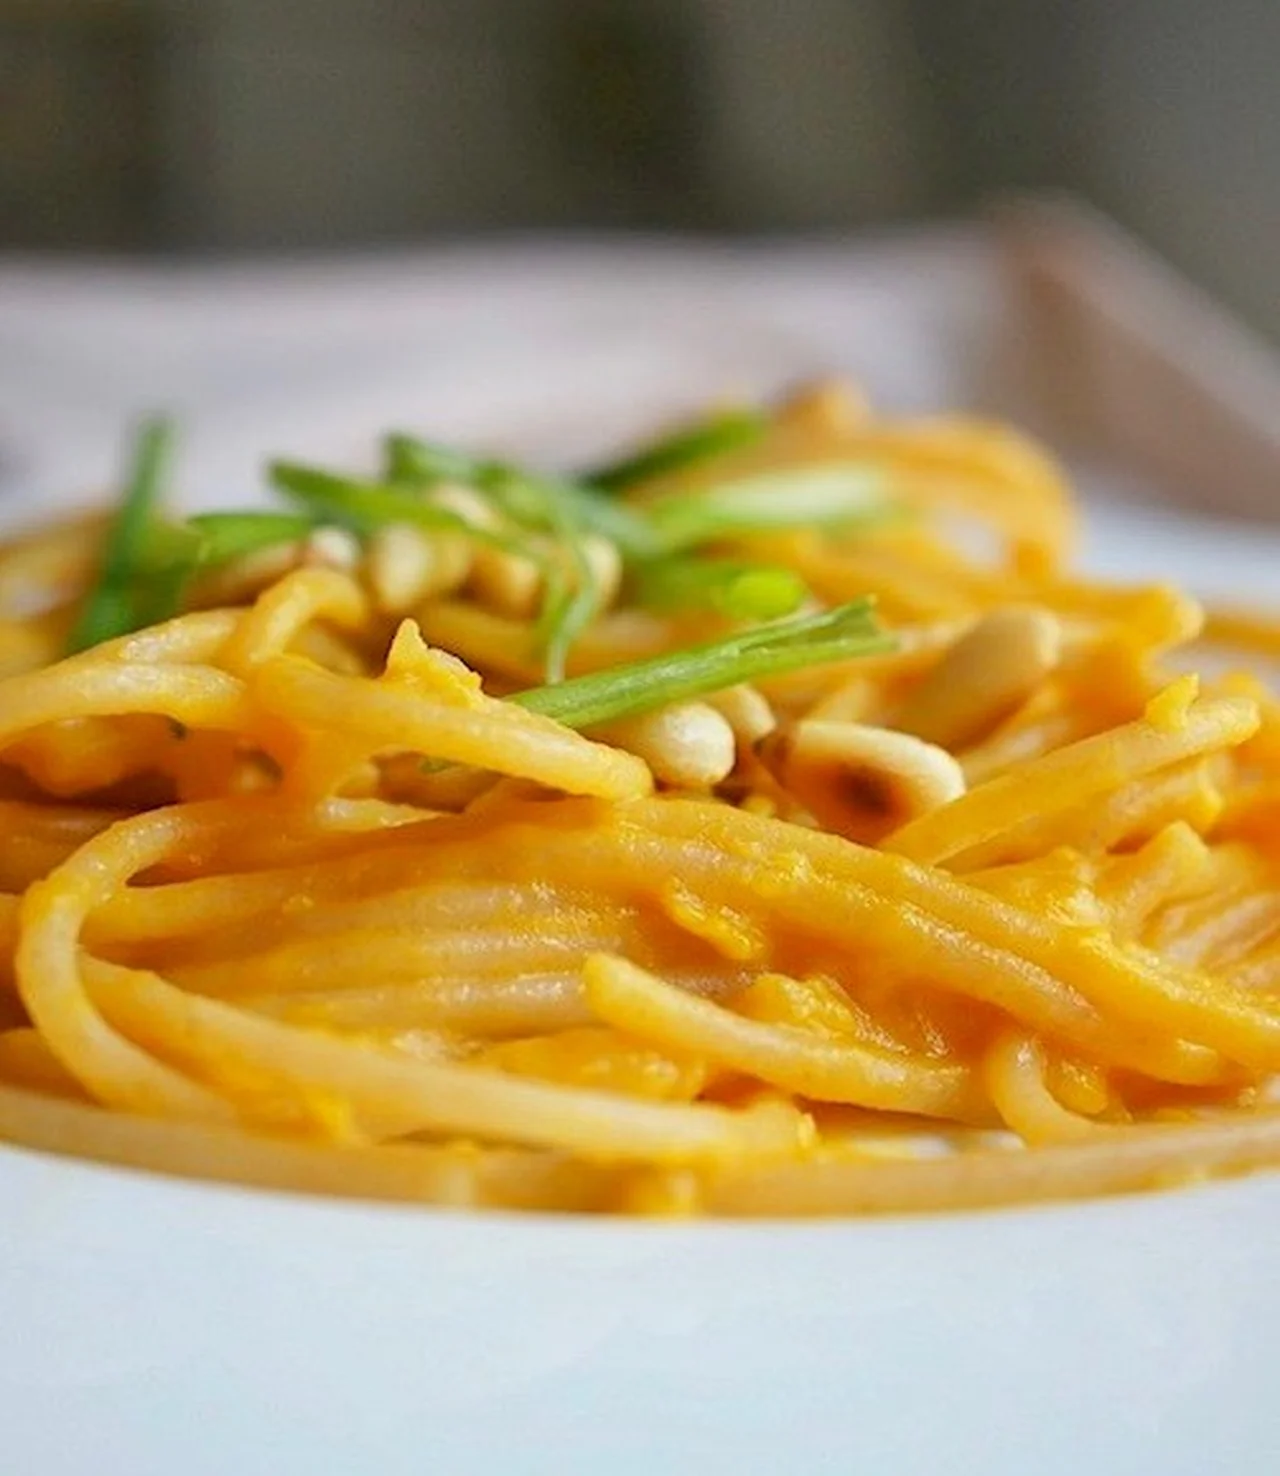 Spaghetti Dyniowe z Serkiem Mascarpone